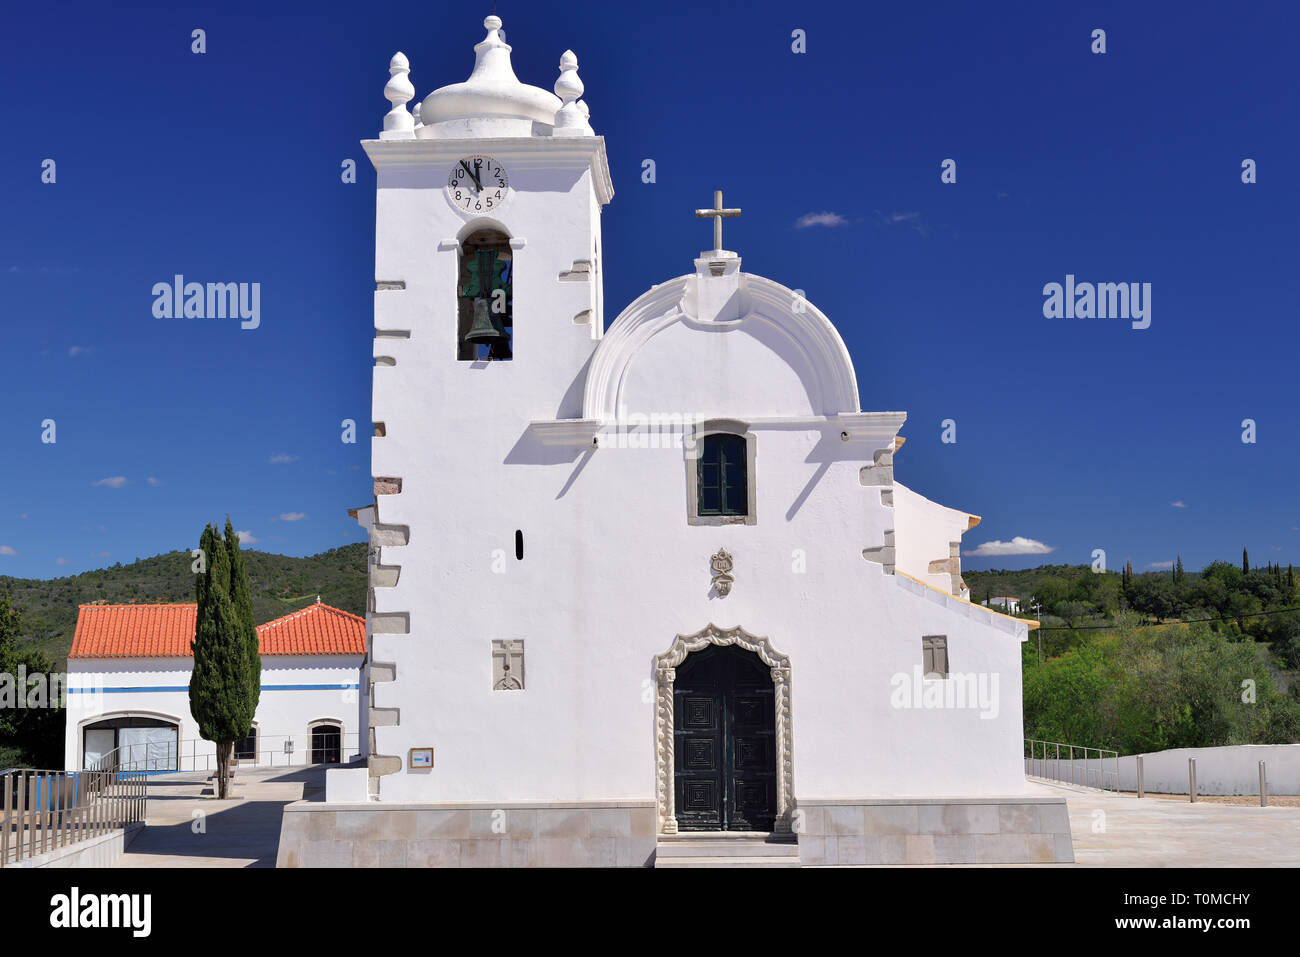 Bianco lavato chiesa medioevale in contrasto con babyblue sky in una giornata di sole Foto Stock